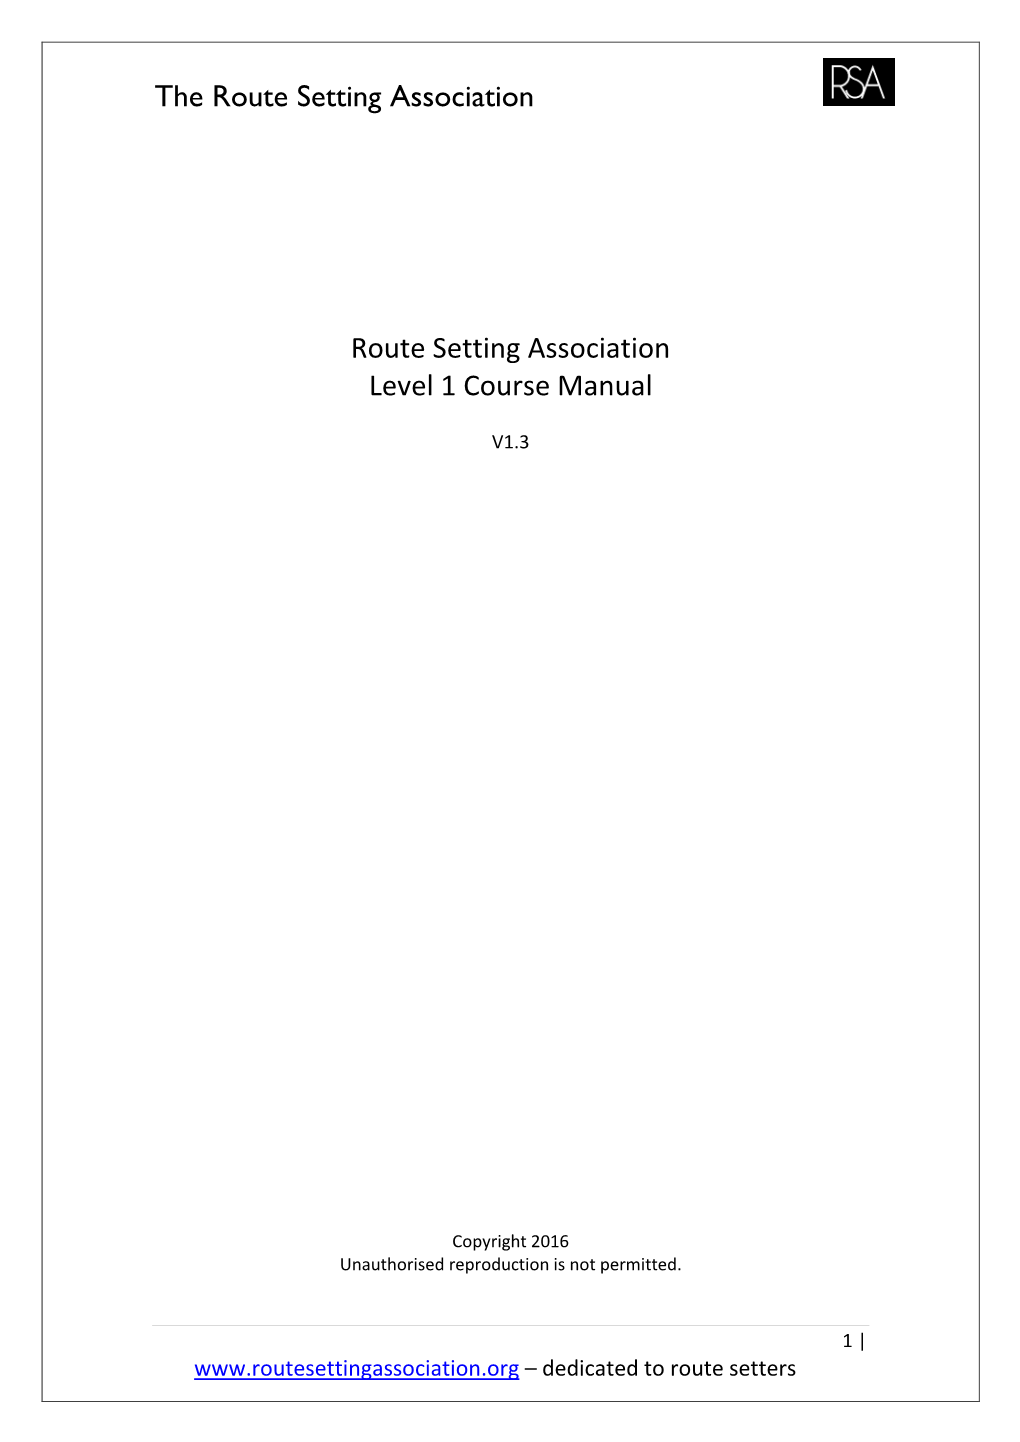 RSA Level 1 Course Manual V1.3 2016